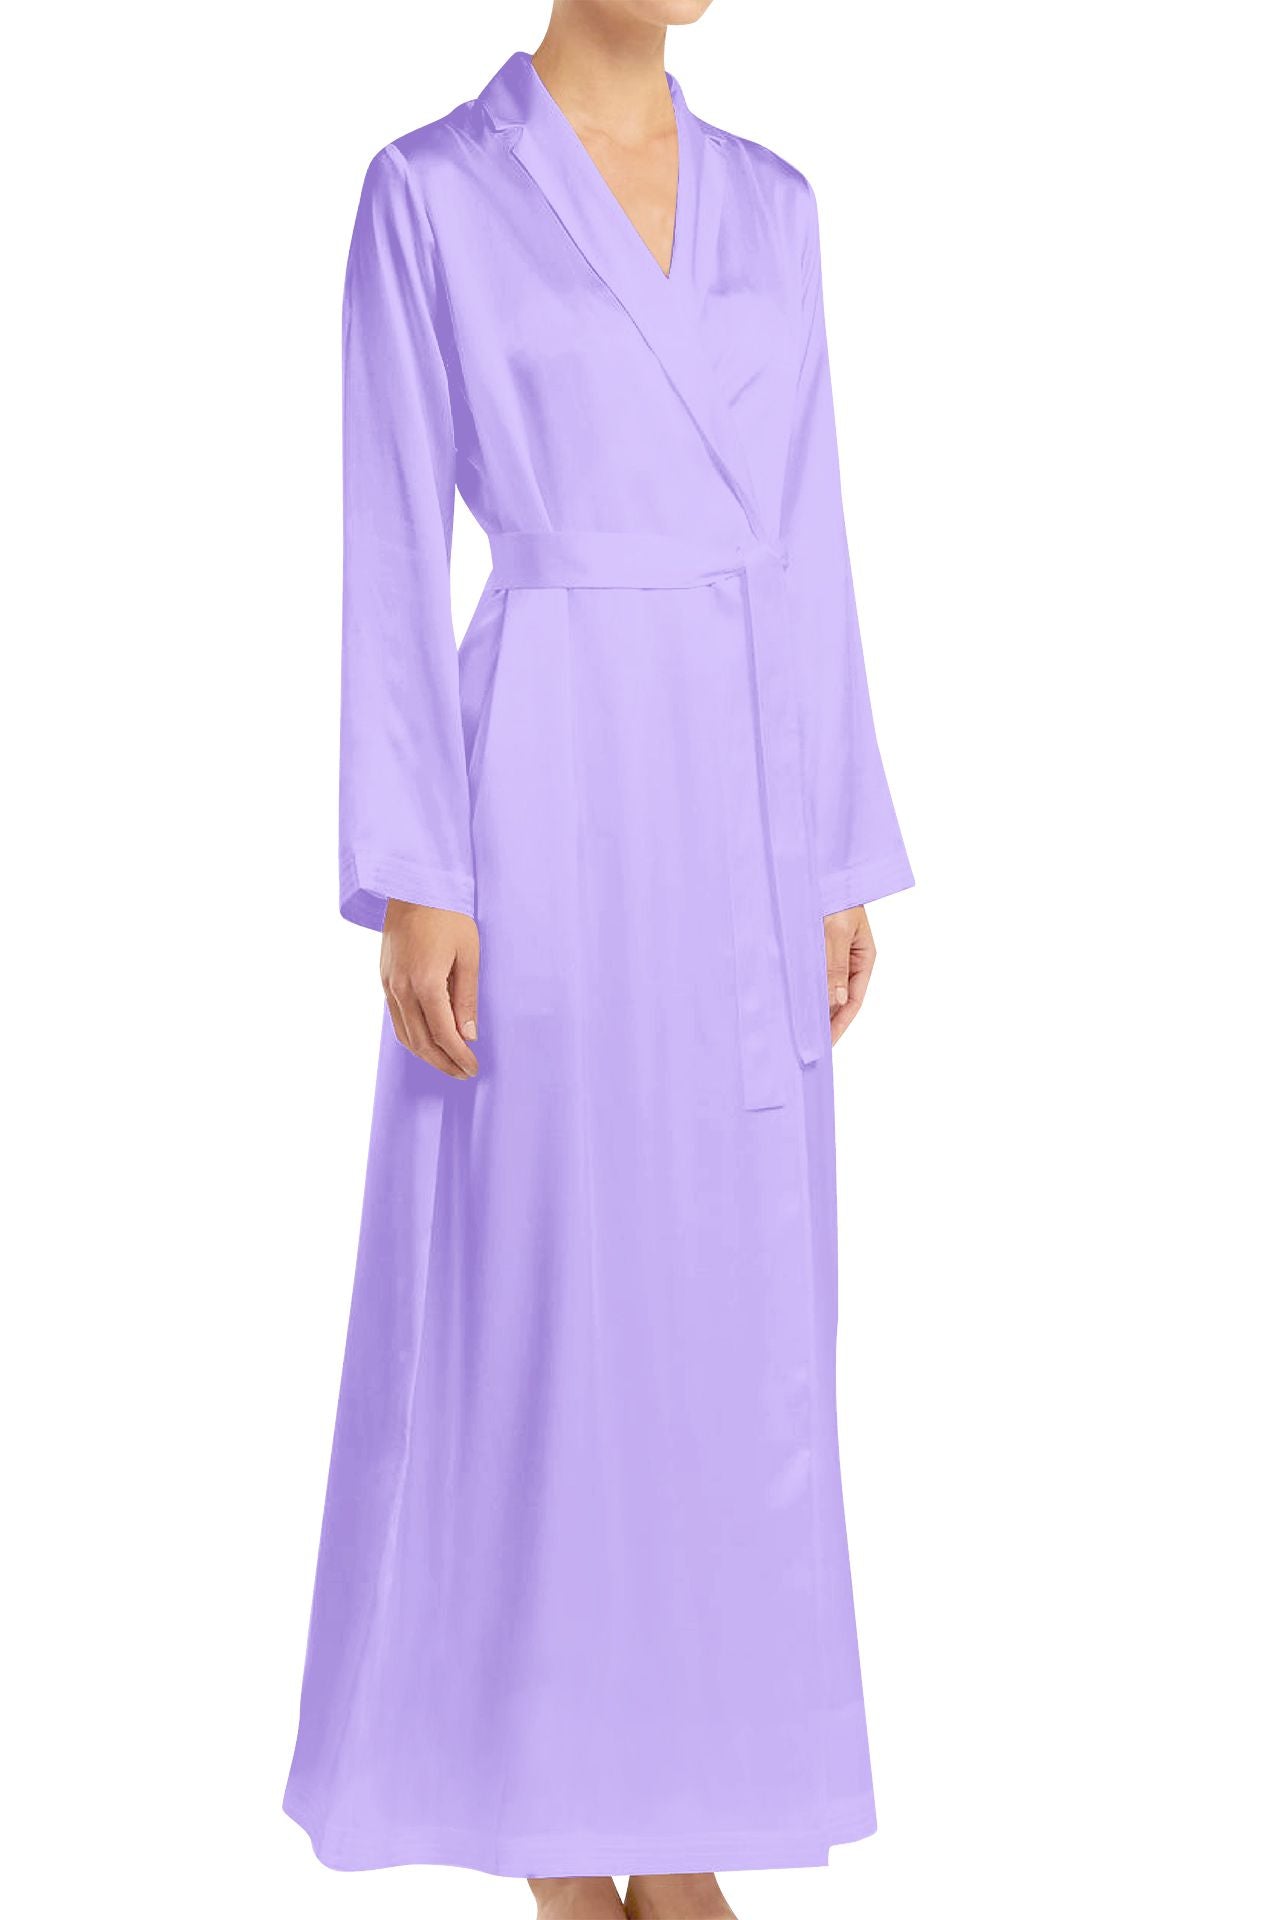 "womens purple wrap dress" "women's long sleeve wrap dress" "purple long sleeve wrap dress" "Kyle X Shahida"